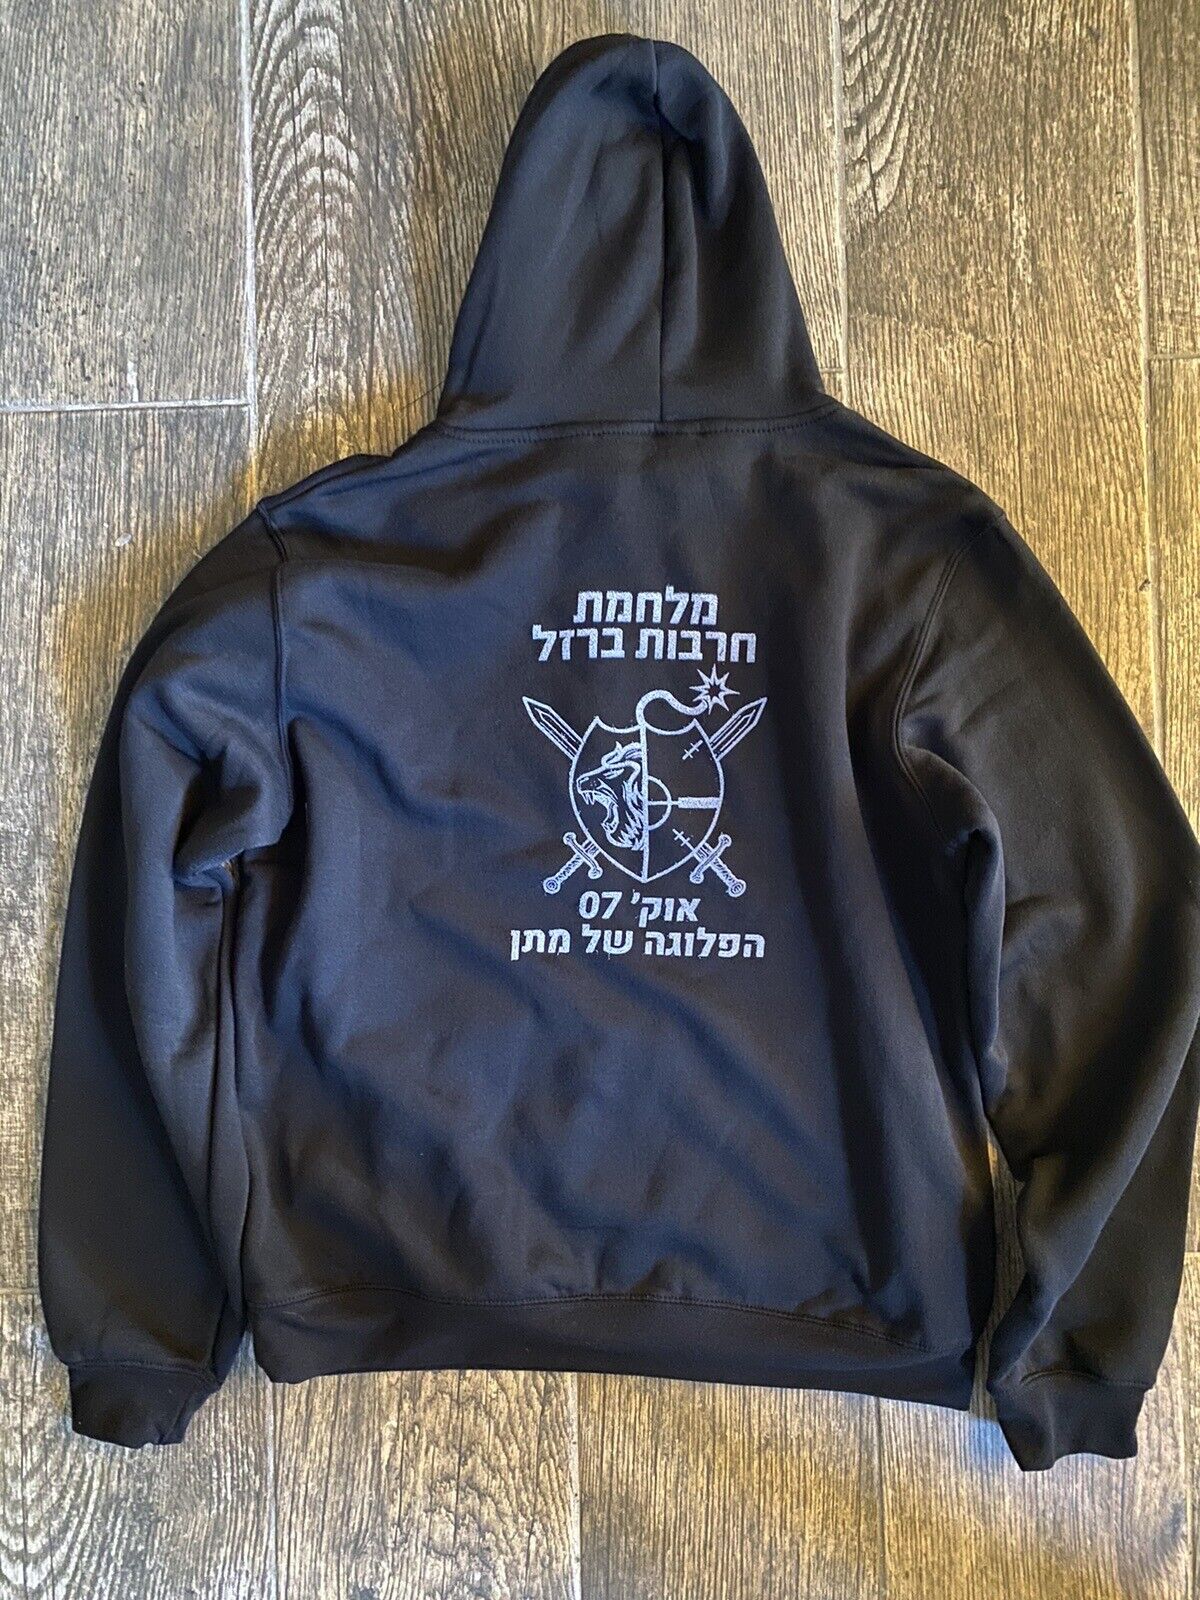 ISRAEL IDF ARMY Iron Swords War 21 Infantry Battalion Uniform Hoodie Medium Size